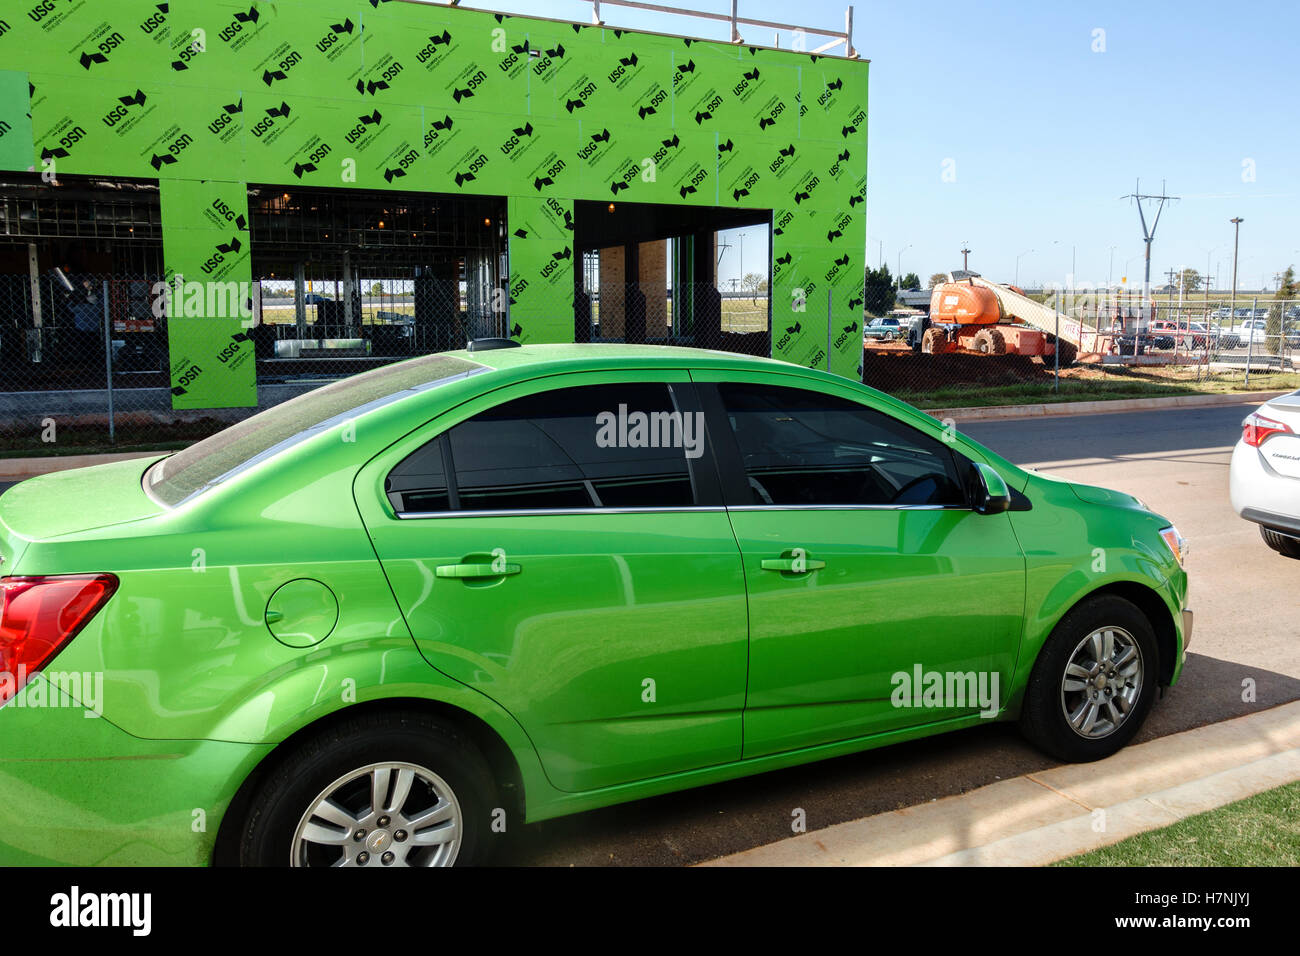 Singolare coincidenza di verde lime la corrispondenza dei colori in un automobile e un edificio in costruzione. Oklahoma, Stati Uniti d'America. Foto Stock